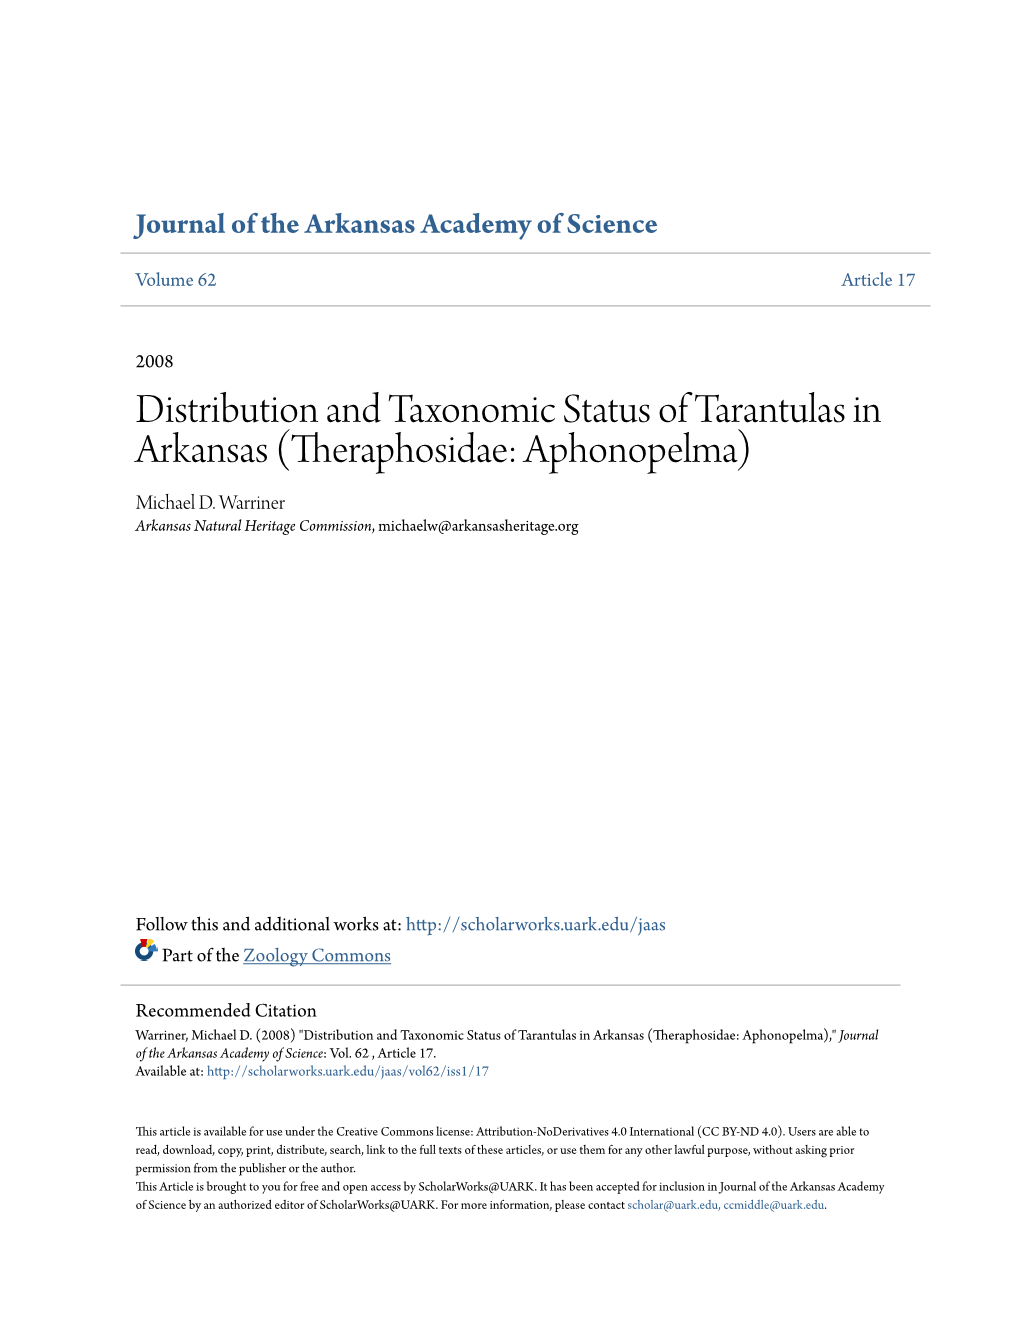 Distribution and Taxonomic Status of Tarantulas in Arkansas (Theraphosidae: Aphonopelma) Michael D